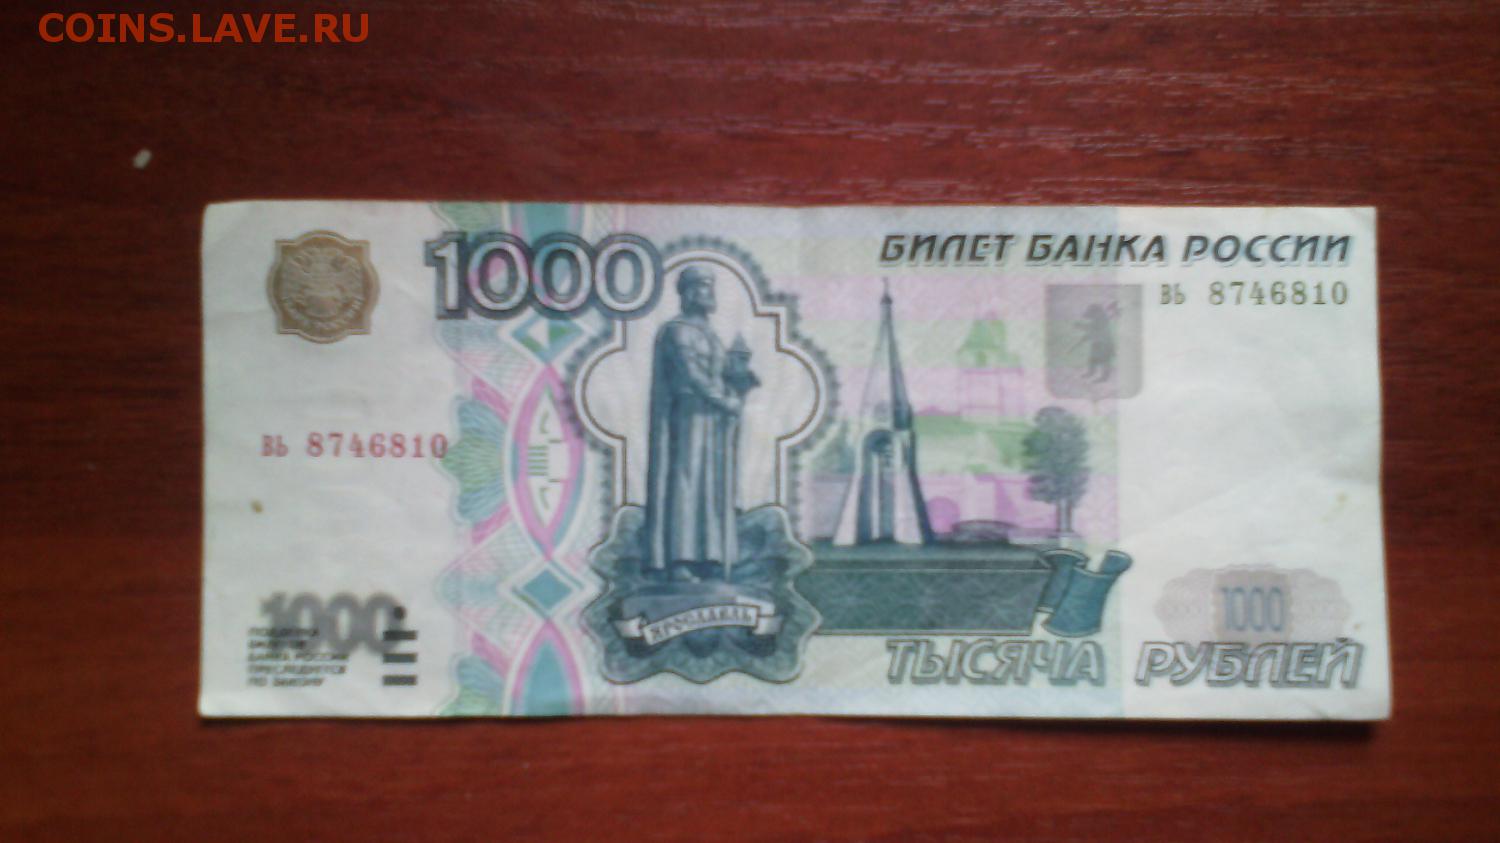 1000 Рублей 1997 года. Тысяча рублей 1997. 1000 Рублей до 1997 года. Тысяча рублей 1997 года.